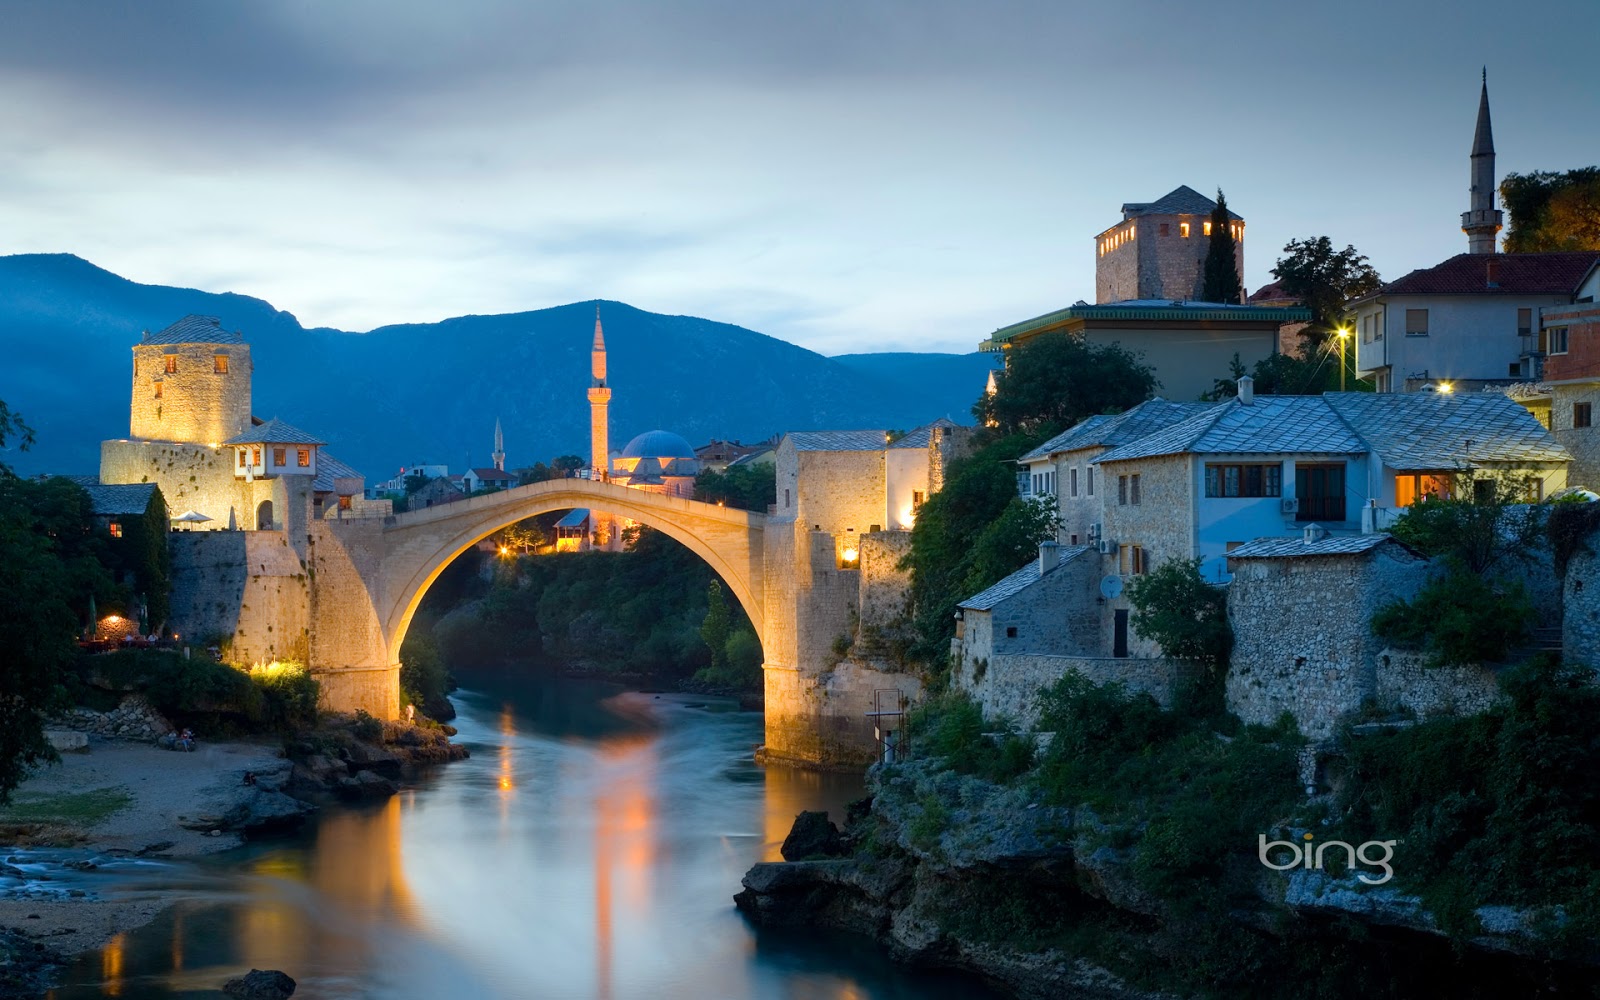 Stari Most Old Bridge over the Neretva river in Mostar Bosnia and